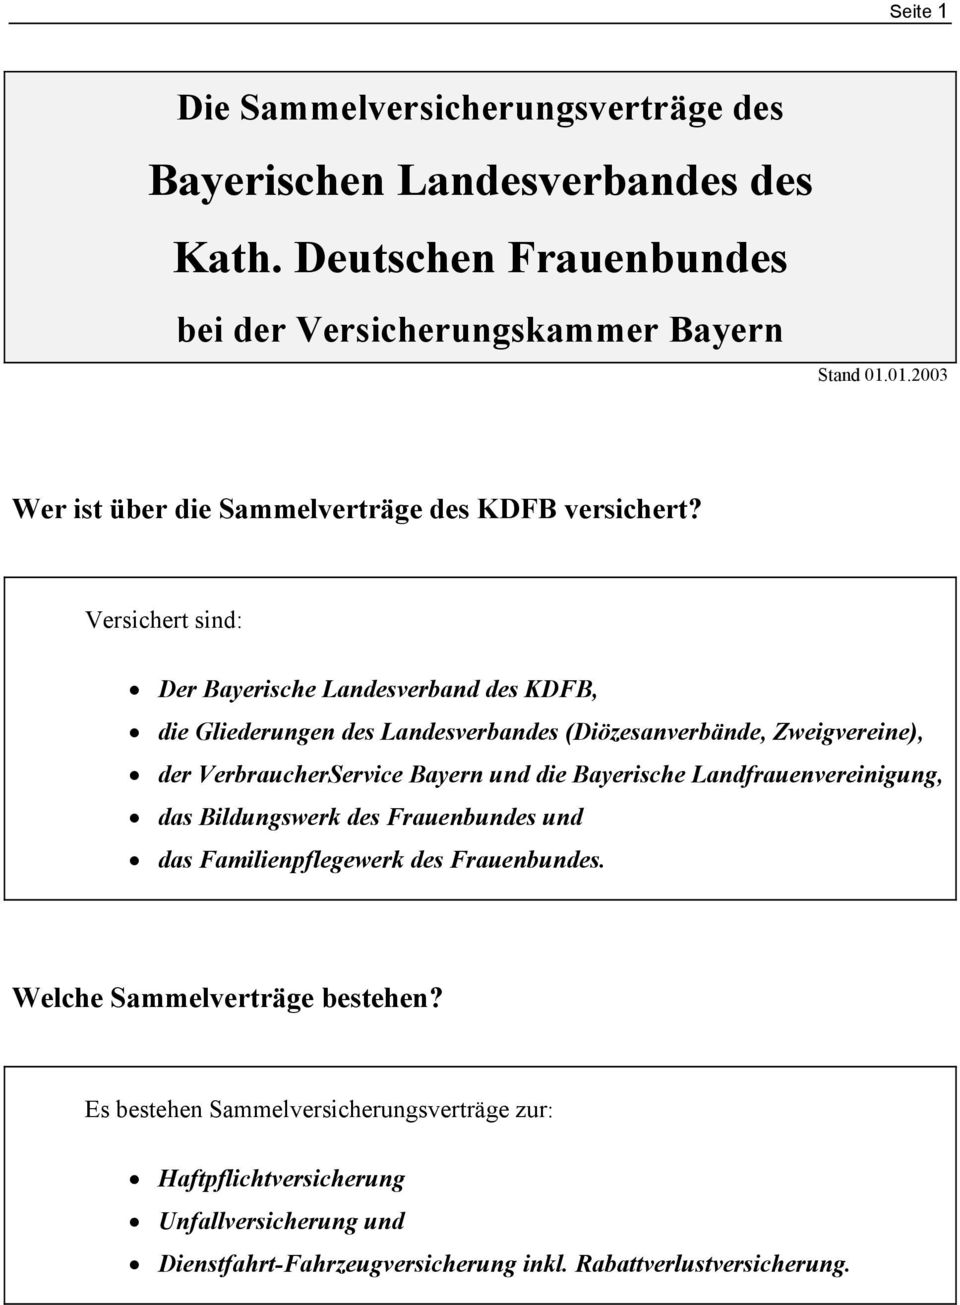 Versichert sind: Der Bayerische Landesverband des KDFB, die Gliederungen des Landesverbandes (Diözesanverbände, Zweigvereine), der VerbraucherService Bayern und die